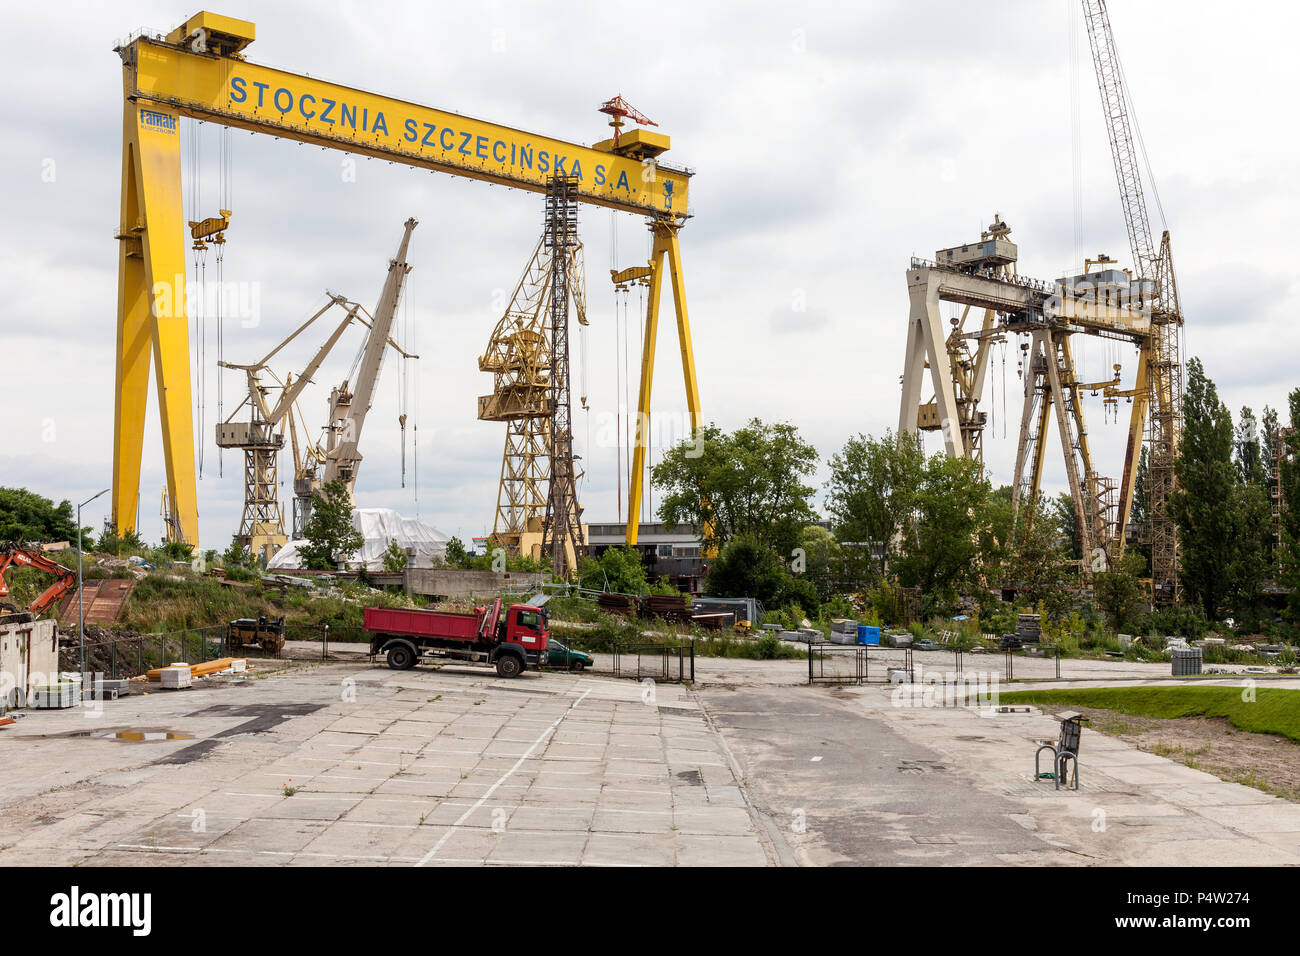 Szczecin, Poland, Shipyard Stocznia Szczecinska Stock Photo